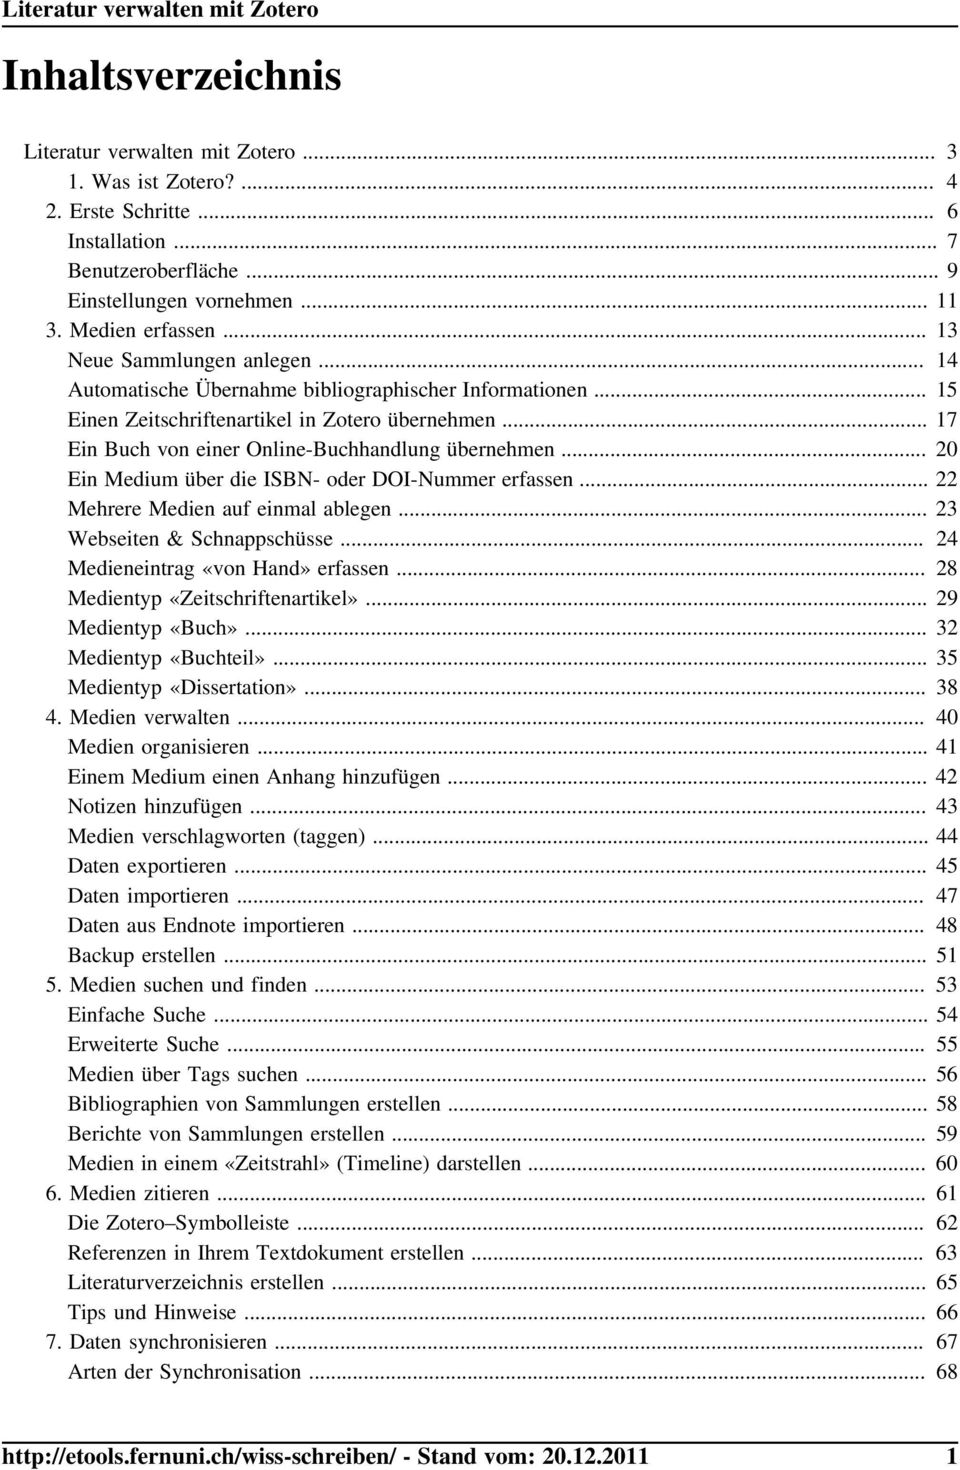 .. 20 Ein Medium über die ISBN- oder DOI-Nummer erfassen... 22 Mehrere Medien auf einmal ablegen... 23 Webseiten & Schnappschüsse... 24 Medieneintrag «von Hand» erfassen.